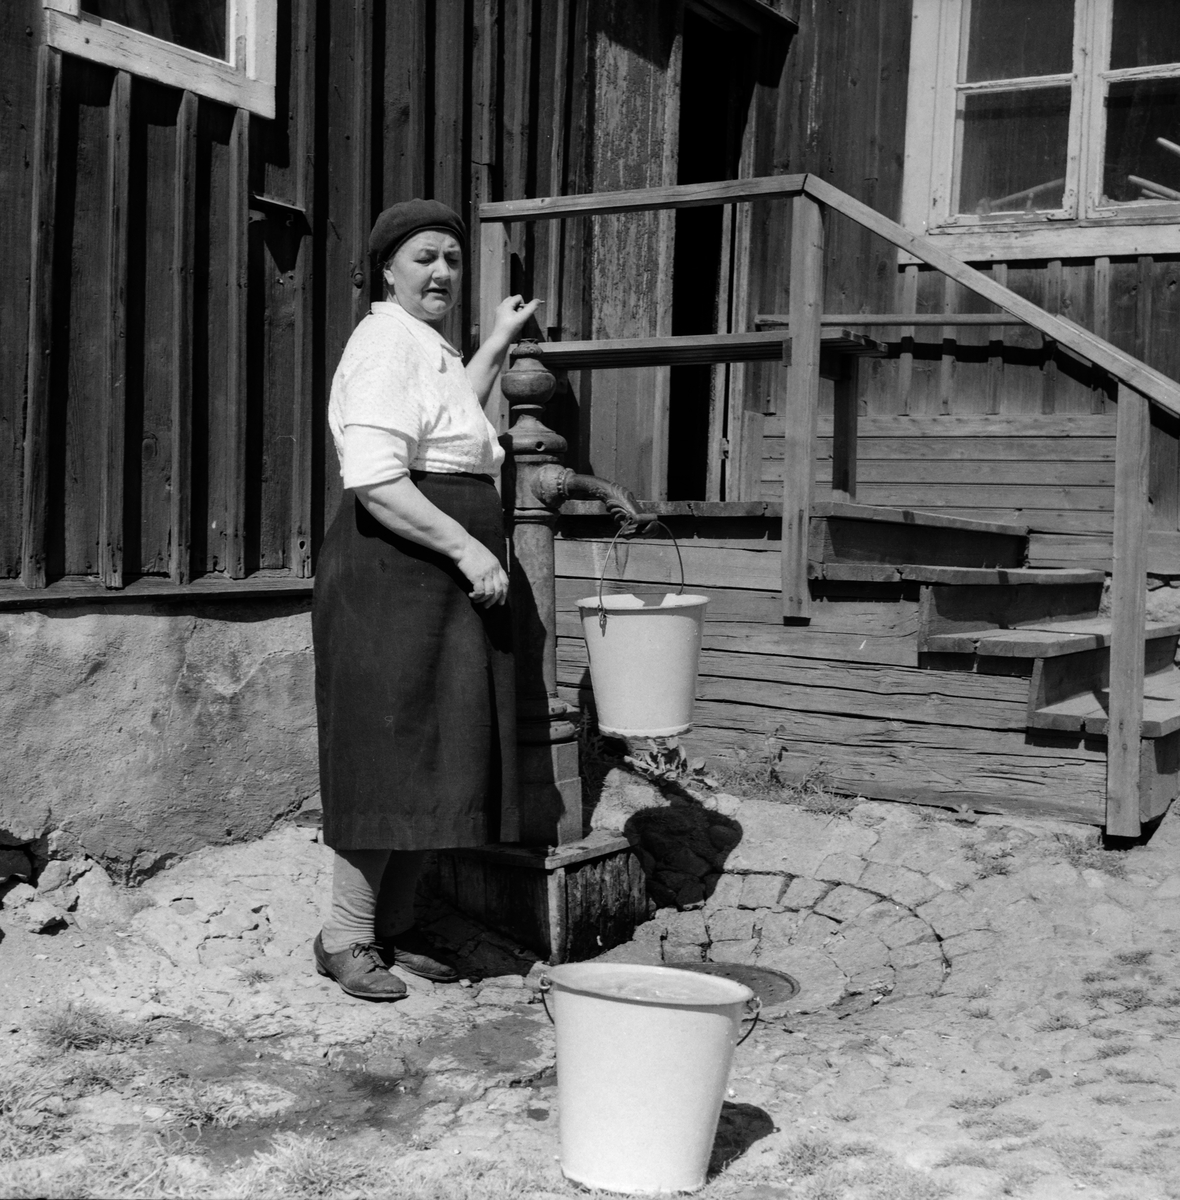 Bakgård i Sankt Korskvarteren , 1952.
Pressfotografier från 1950-1960-talet. Samtliga bilder är tagna i Östergötland, de flesta i Linköping.